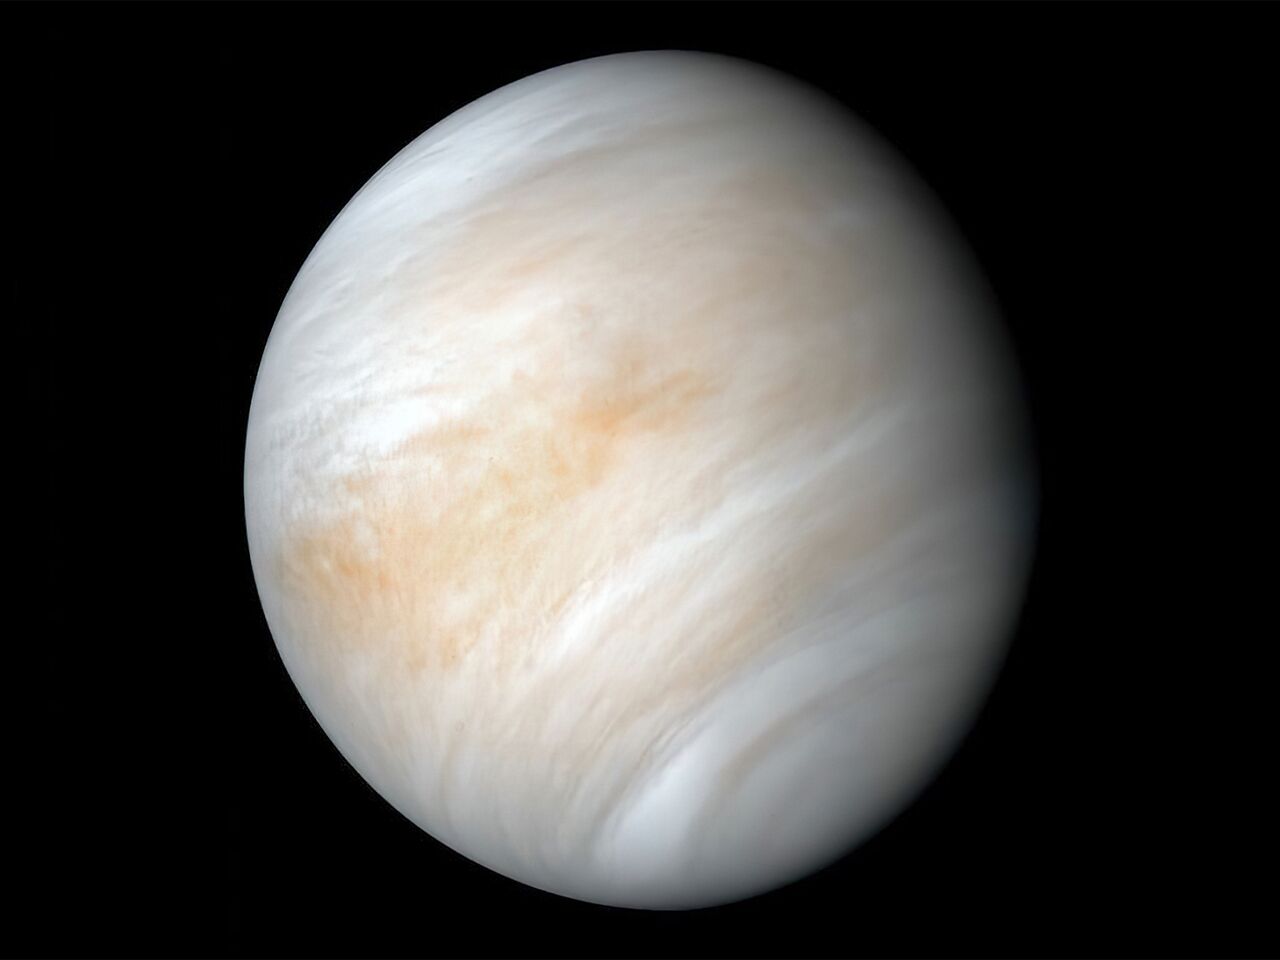 Статья: Венера - планета загадок